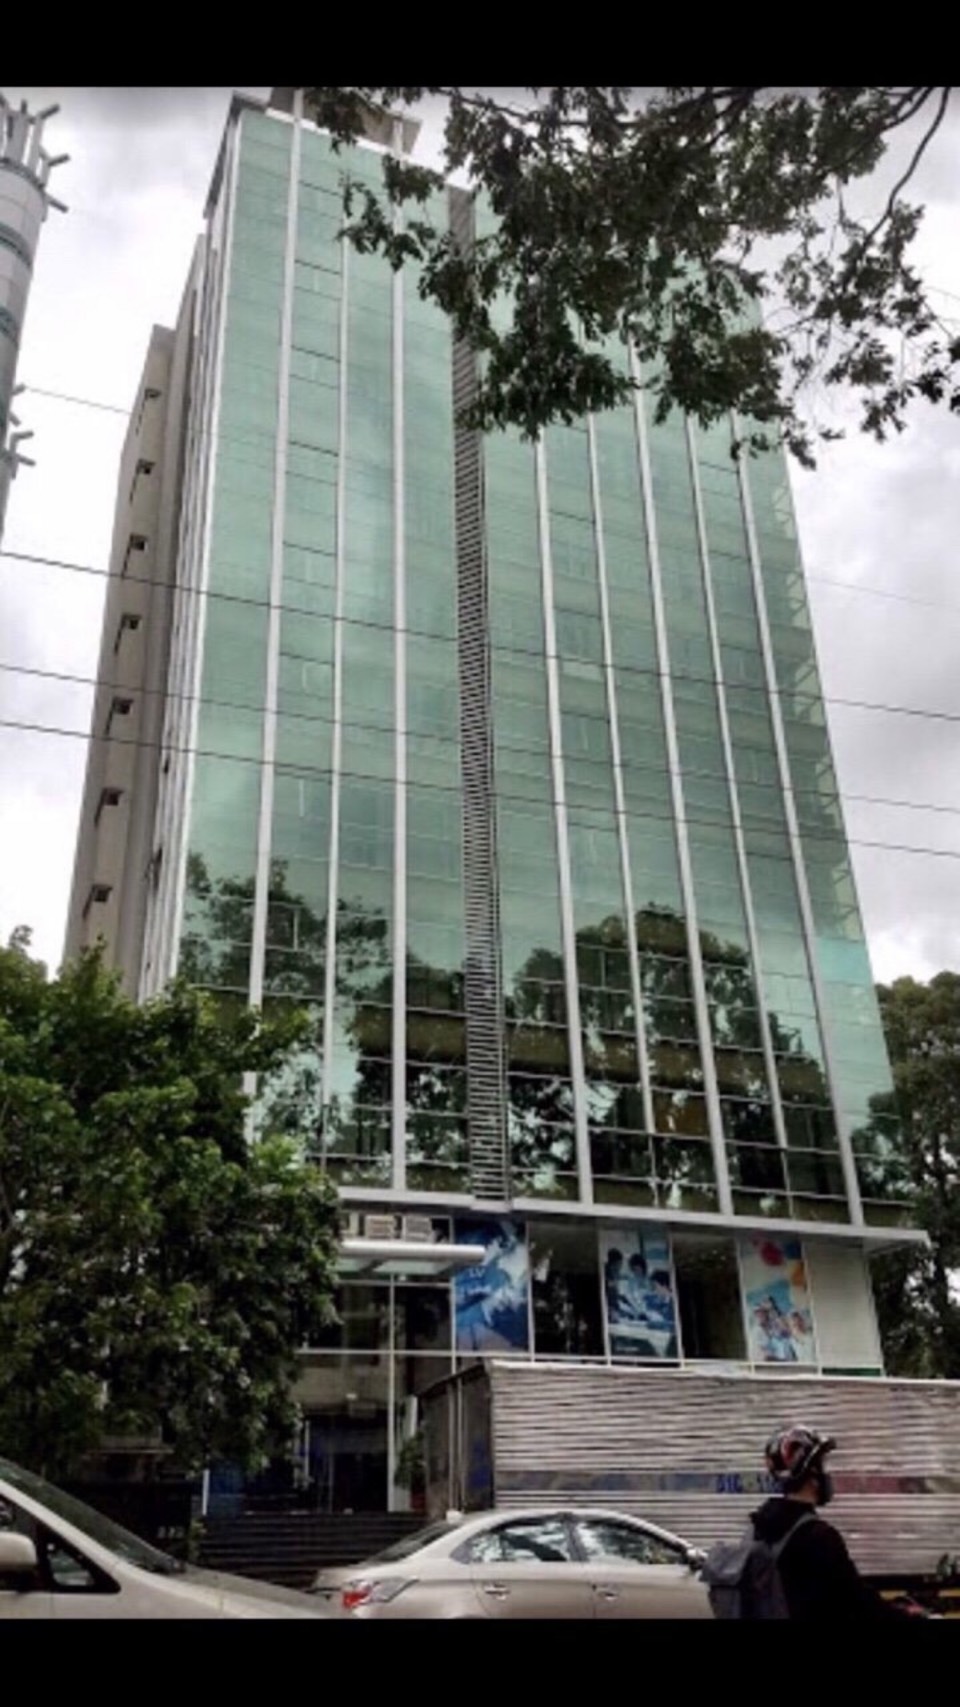 Bán nhà MT Xa Lộ Hà Nội, P.Thảo Điền, Quận 2, TP. Hồ Chí Minh, 20x27m, khu được xây đến 15 tầng